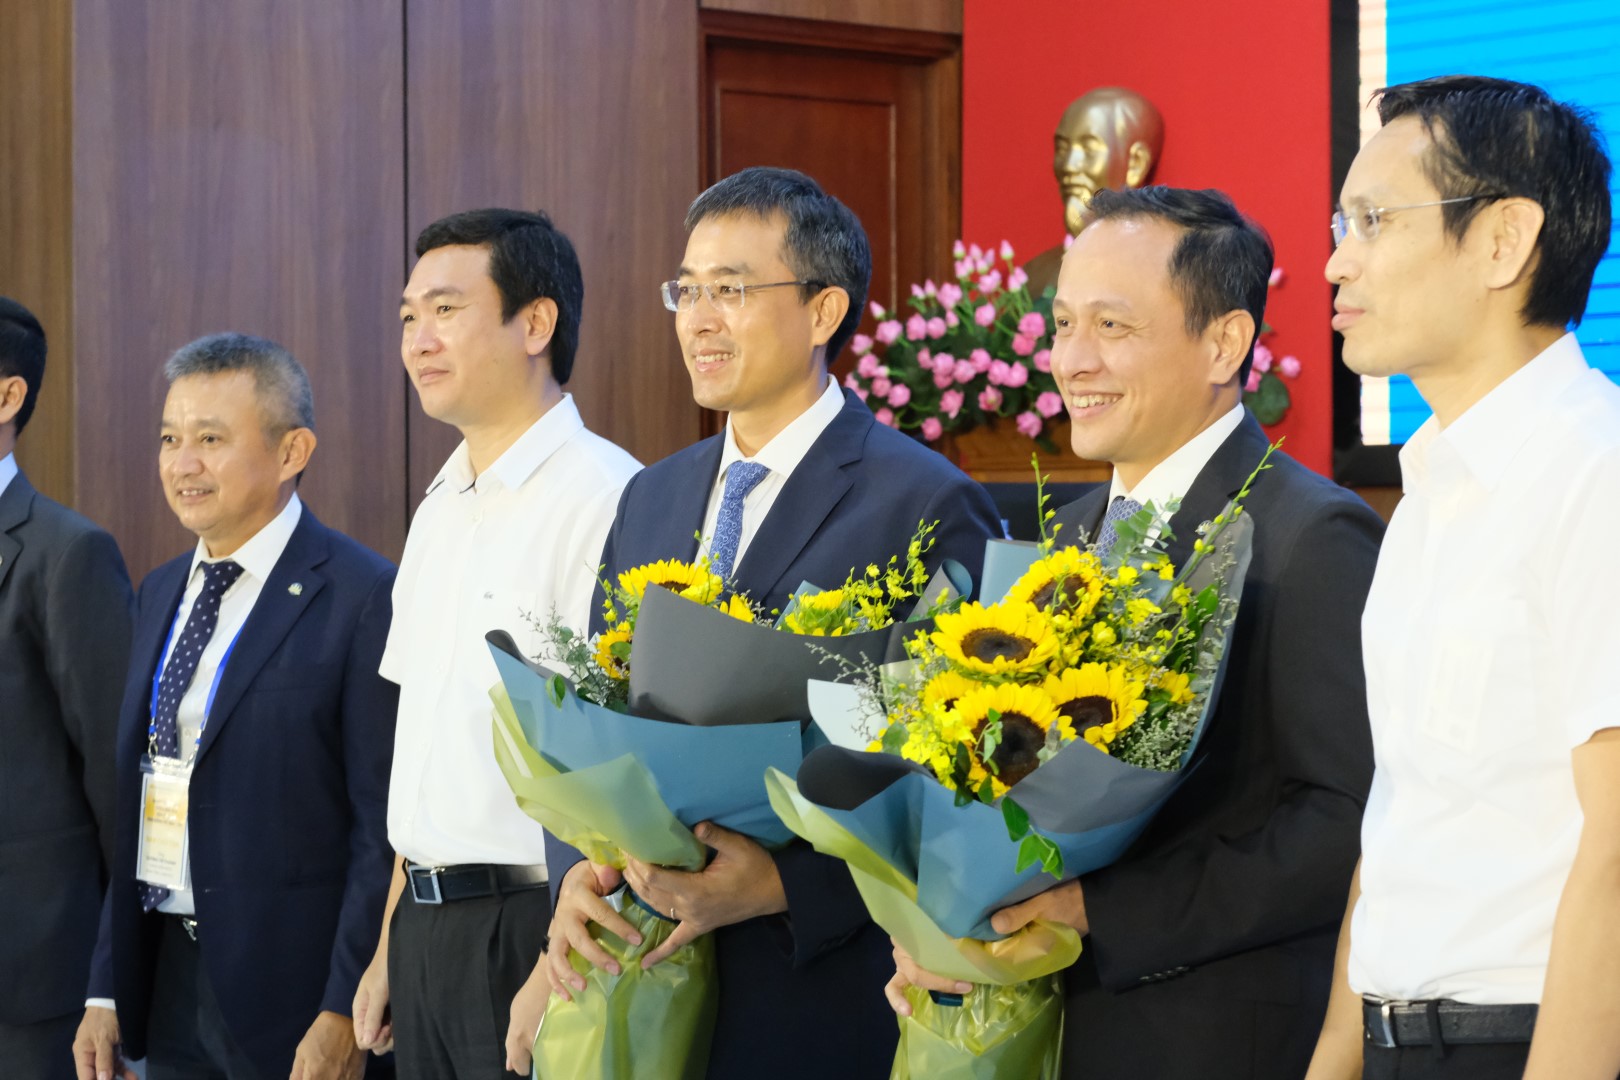 Ông Đặng Ngọc Hoà, ông Lê Hồng Hà và ông Tomoji Ishi được Đại hội đề cử làm Thành viên HĐQT